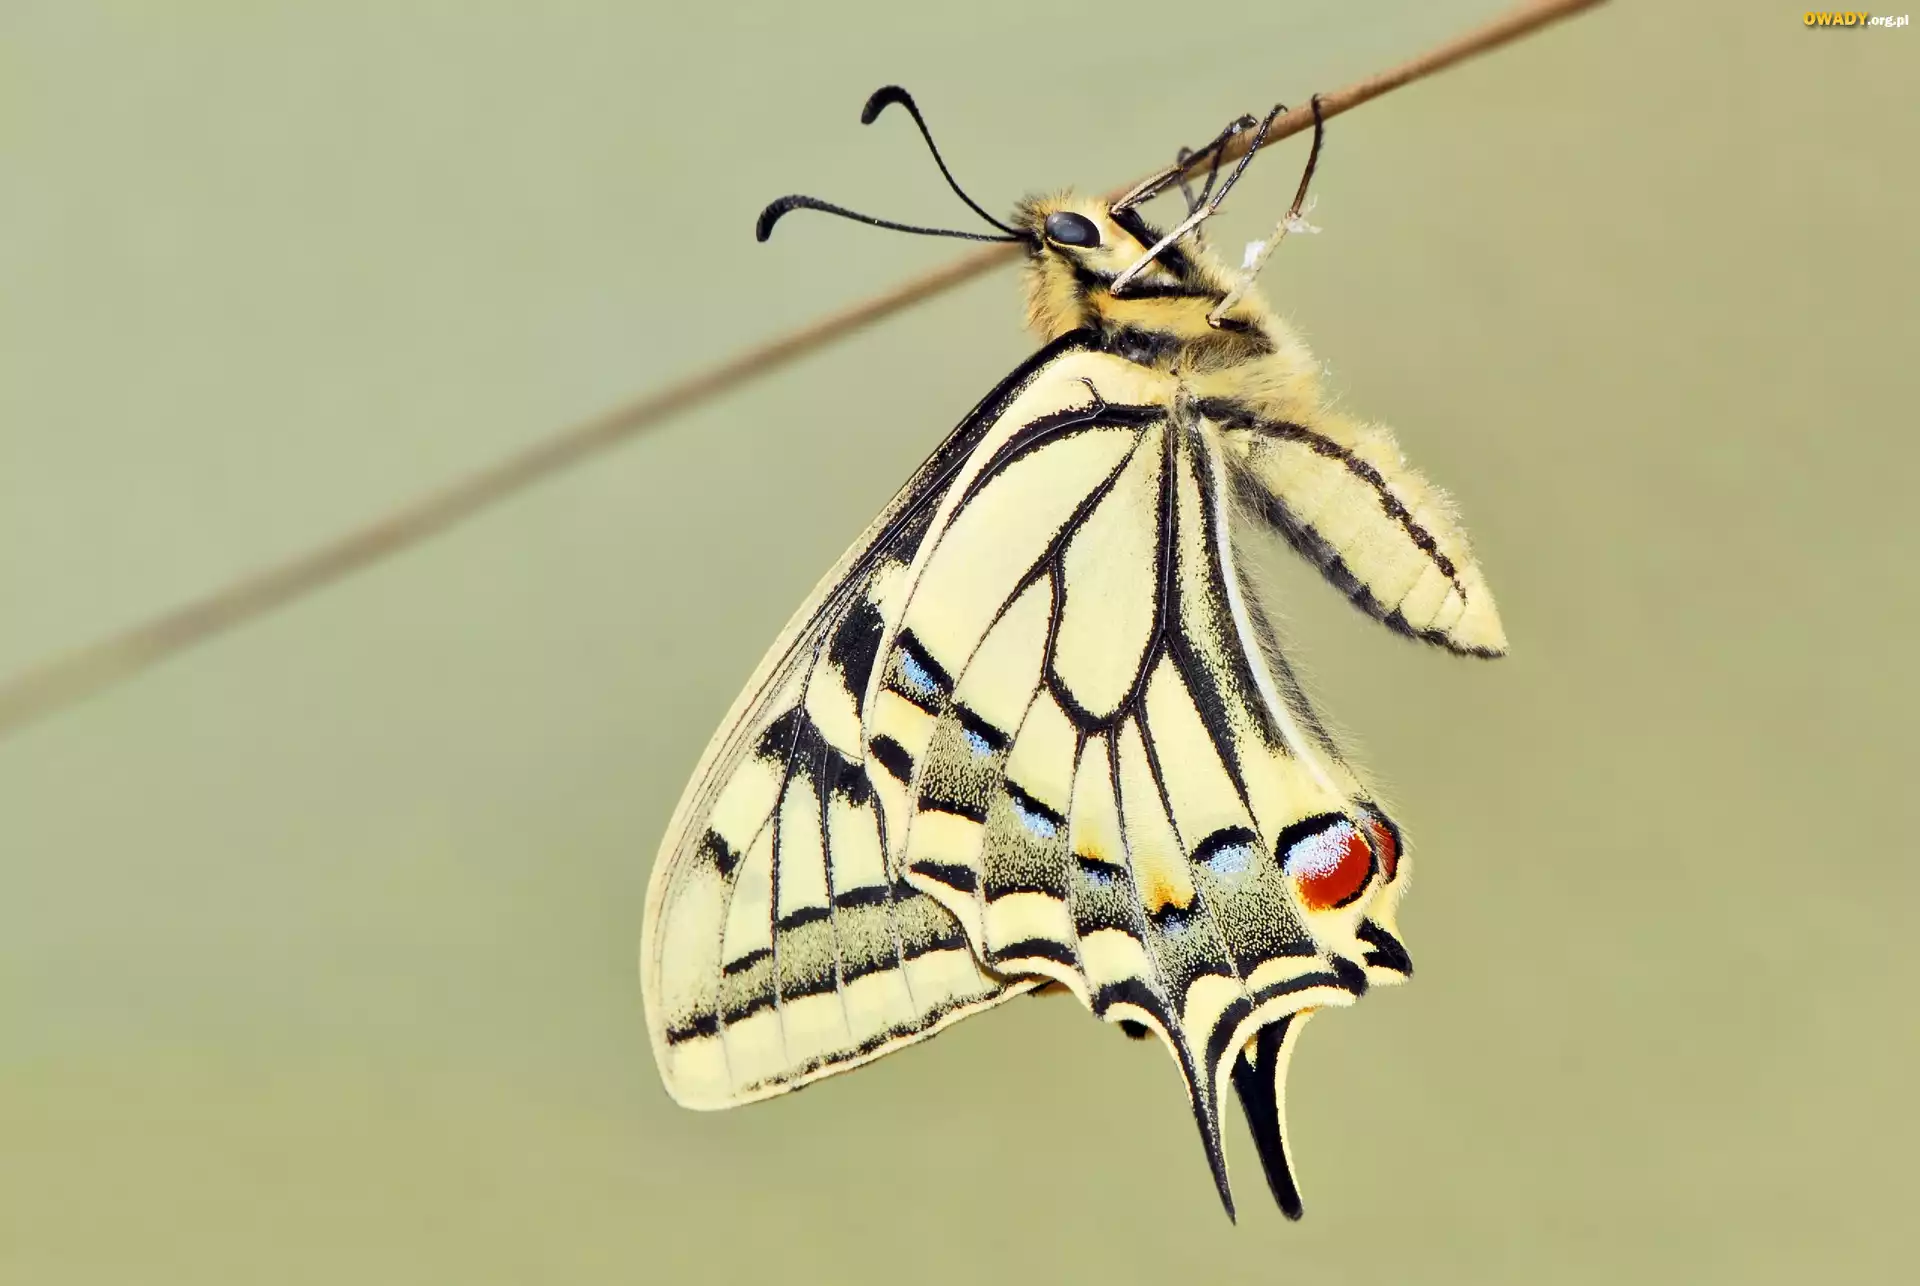 Motyl, Paź królowej